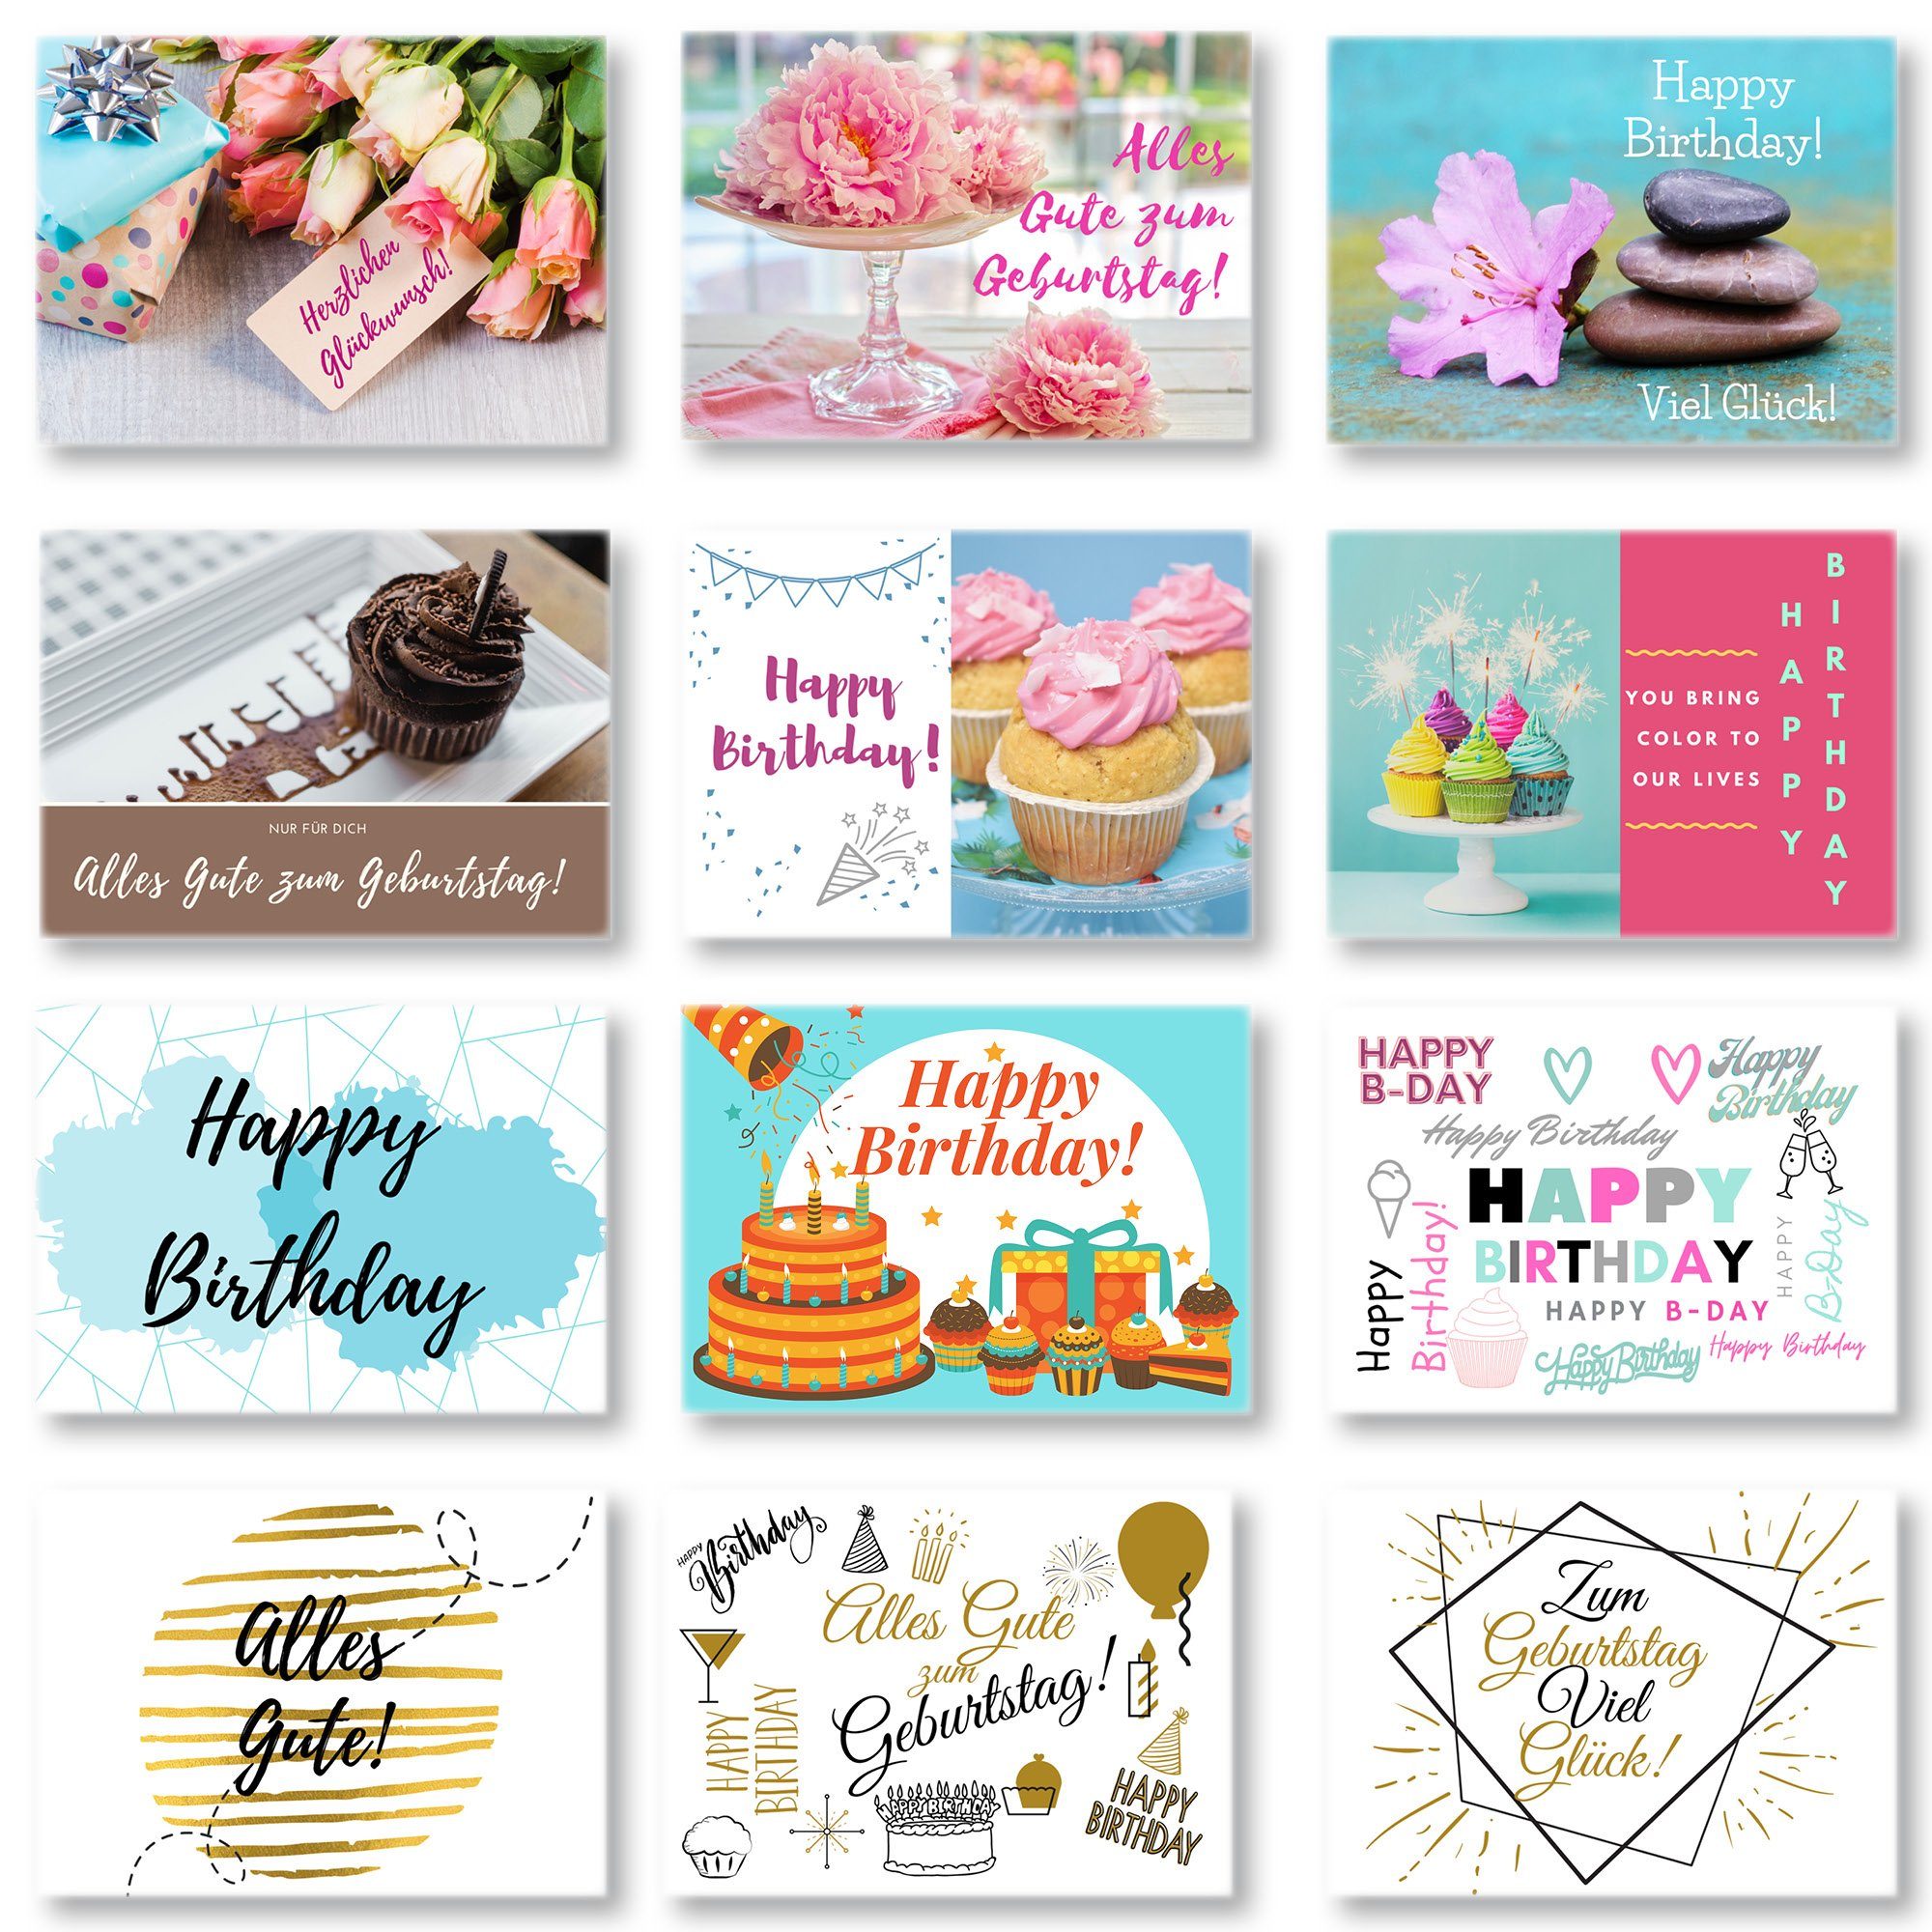 [Normaler Versandhandel] Domelo Geburtstagskarte Geburtstagskarten 24er Happy Grußkarten 24er zum Geburtstag Postkarten, Birthday Set, Kraftpapier Set mit Karten Umschlag